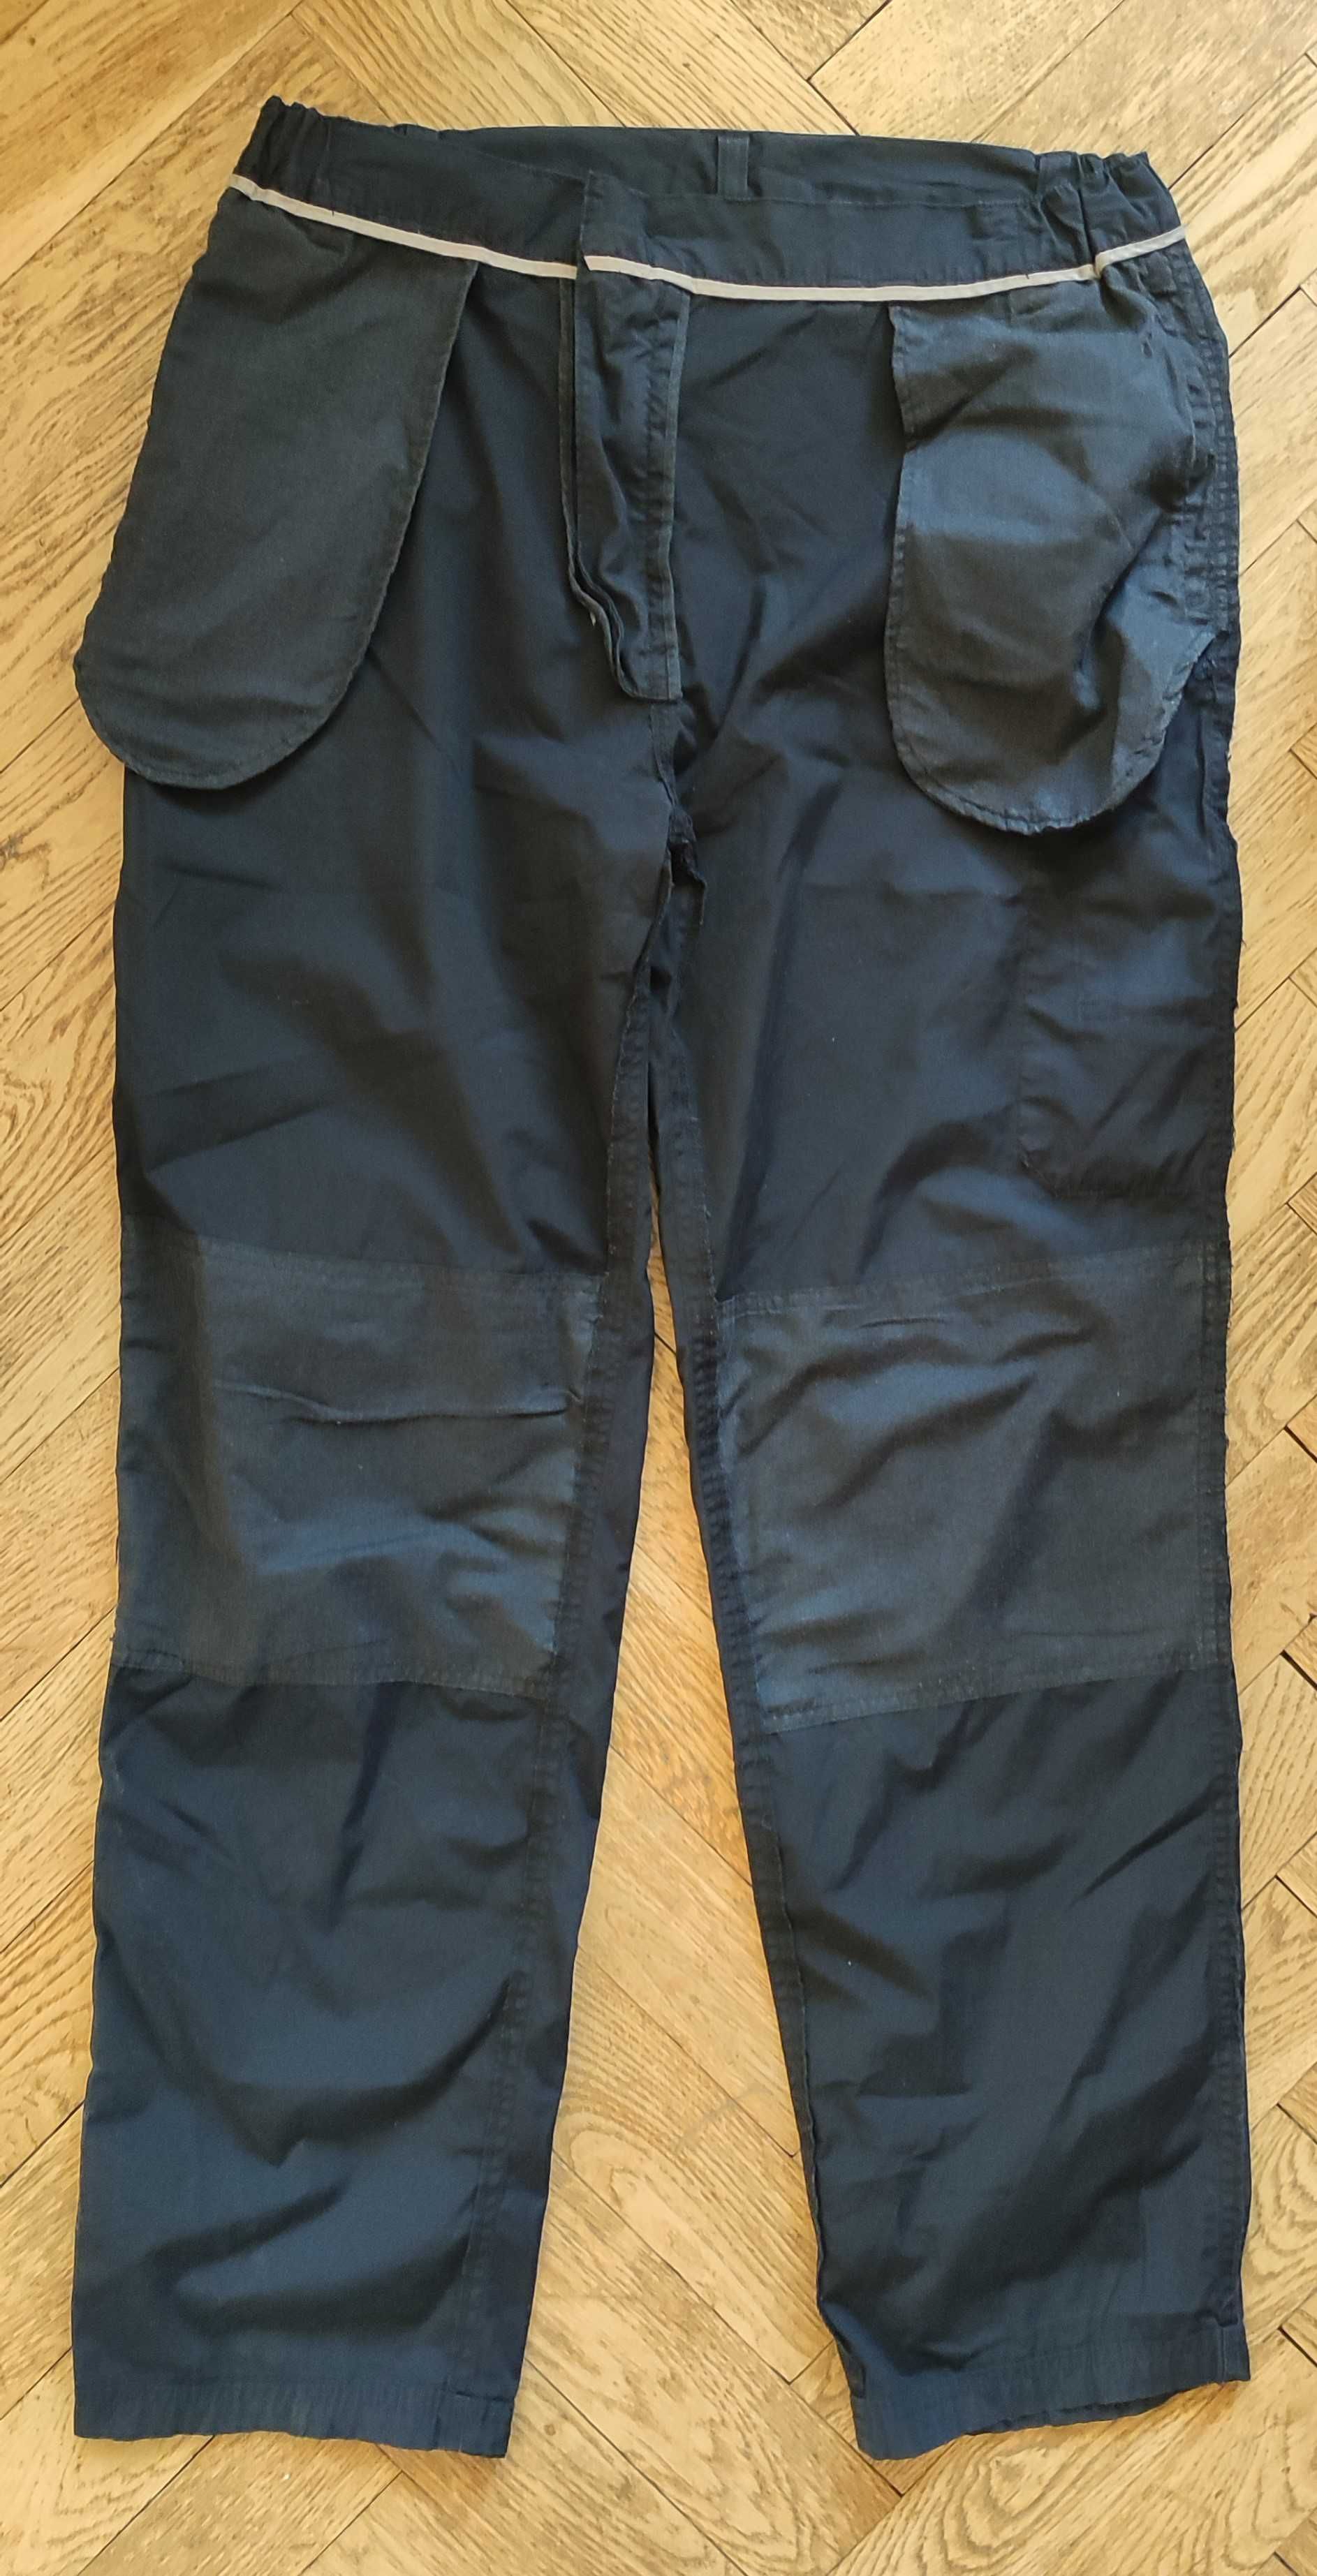 Spodnie trekkingowe męskie CRAGHOPPERS rozmiar 36’L   91cm